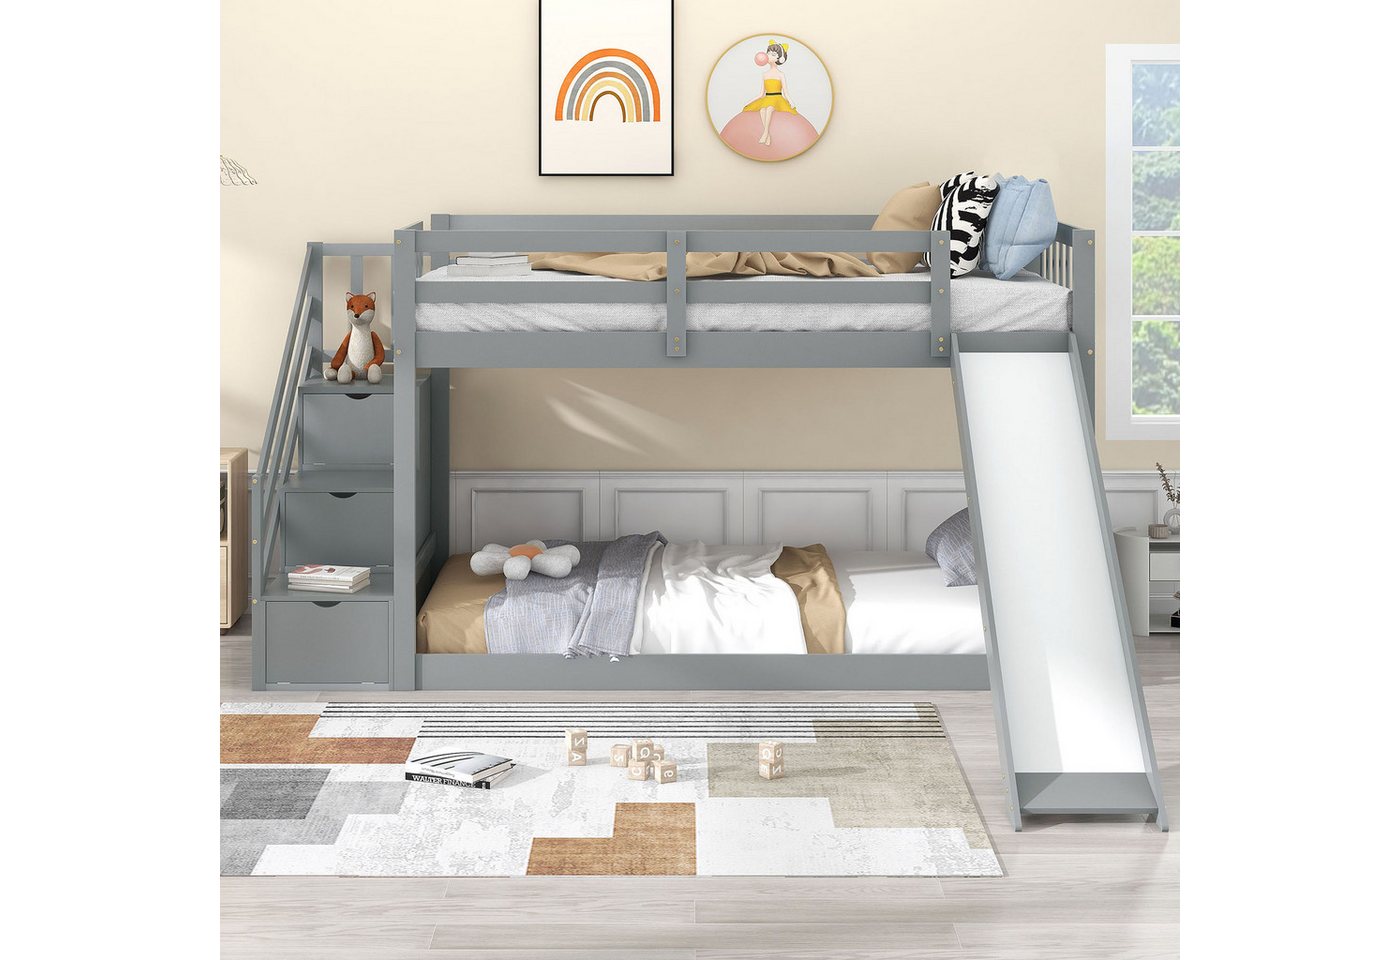 SOFTWEARY Etagenbett mit 2 Liegeflächen, Lattenrost und Rutsche (90x200 cm), Kinderbett inkl. Rausfallschutz von SOFTWEARY